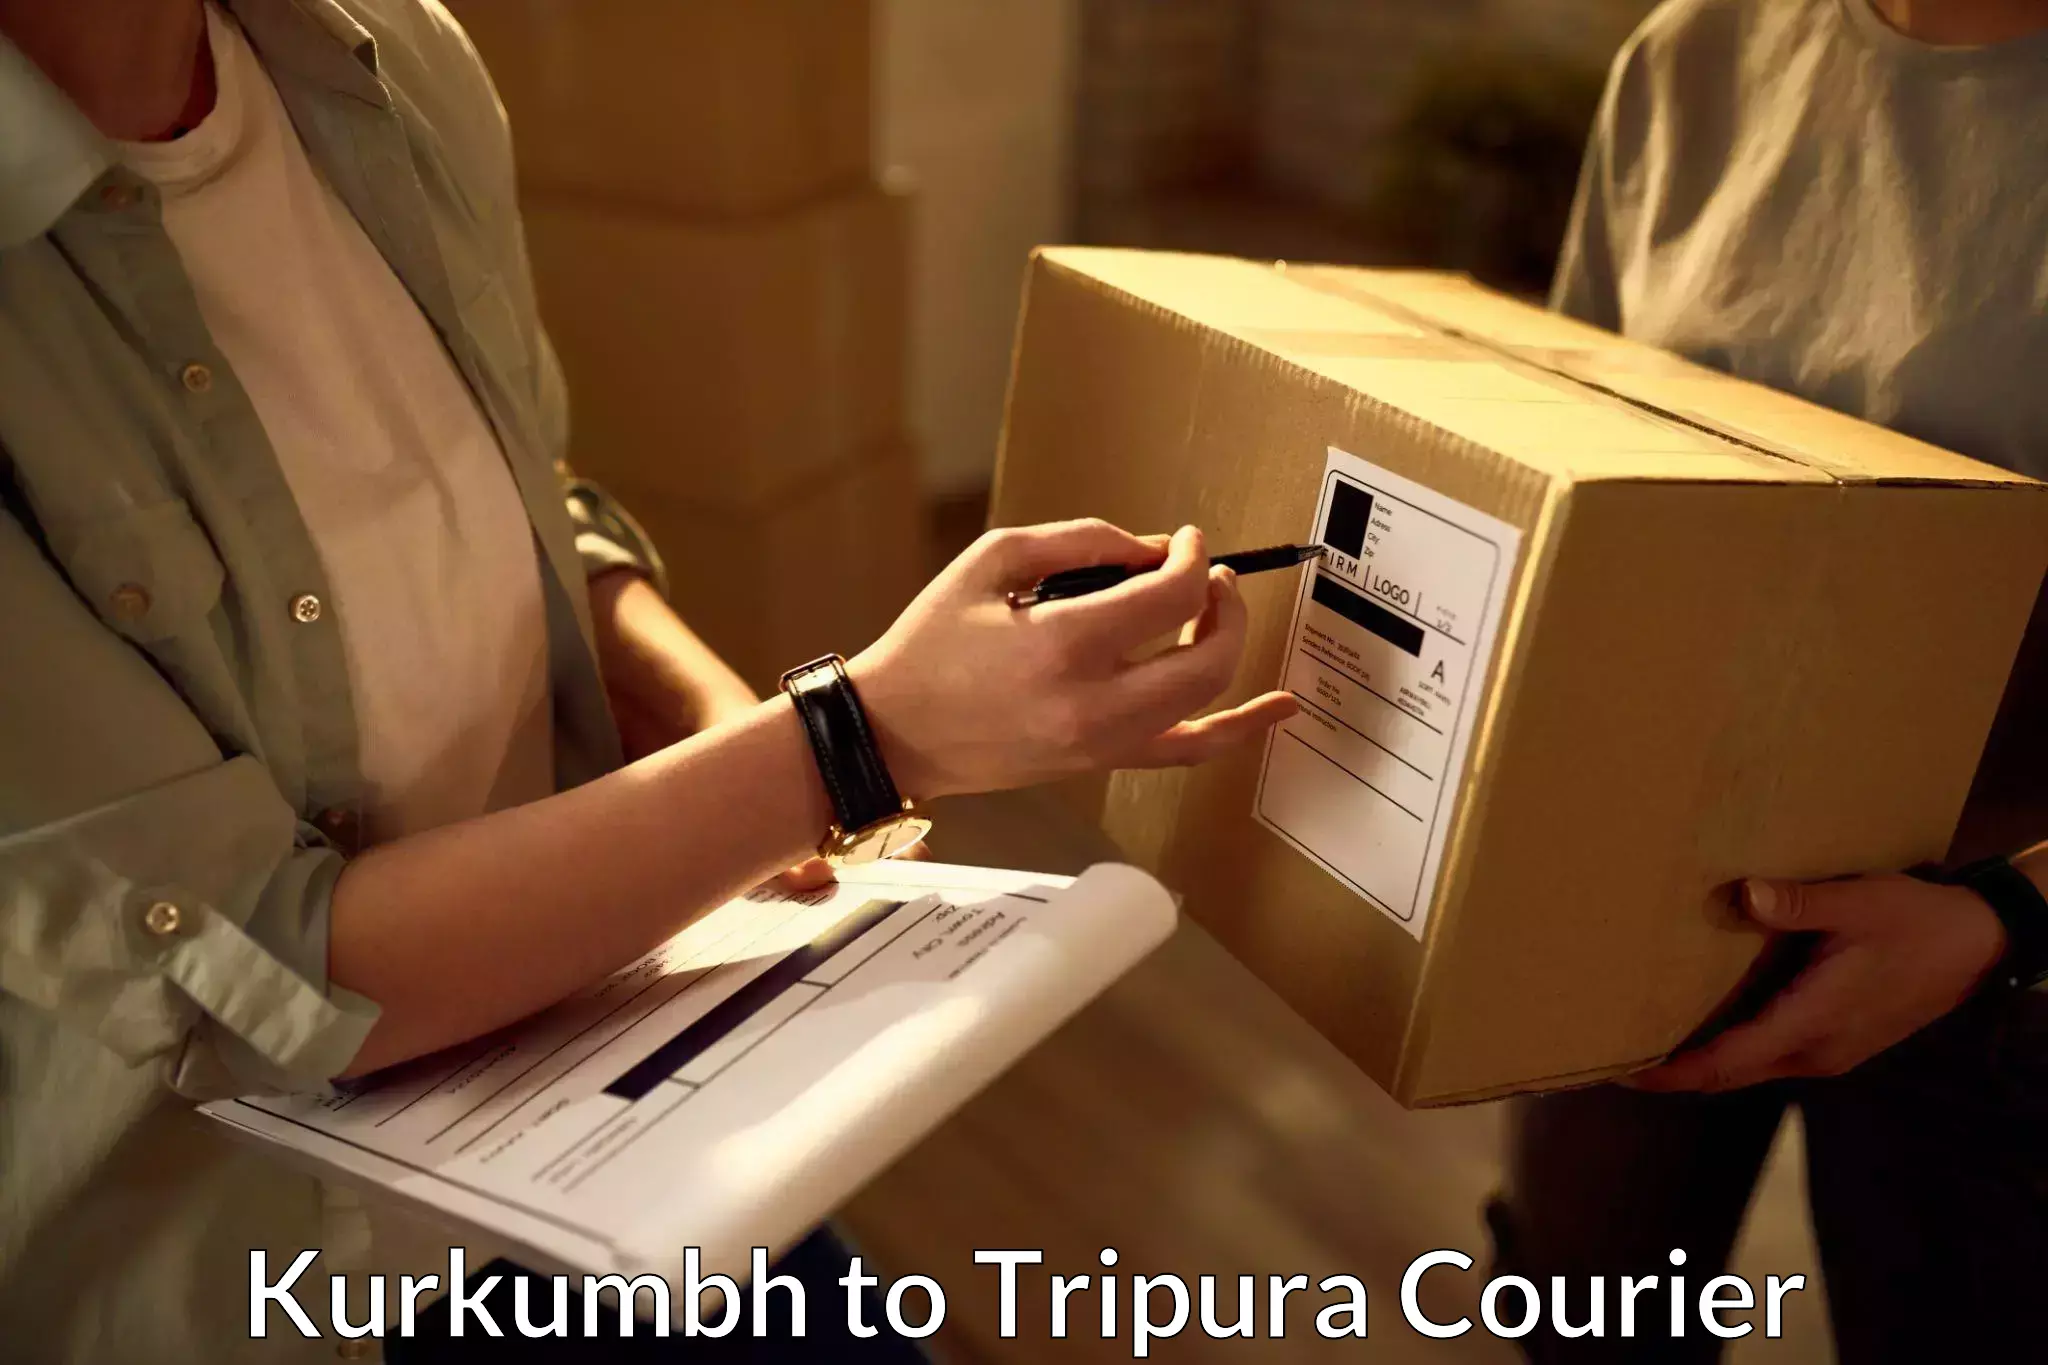 Express courier capabilities Kurkumbh to Udaipur Tripura